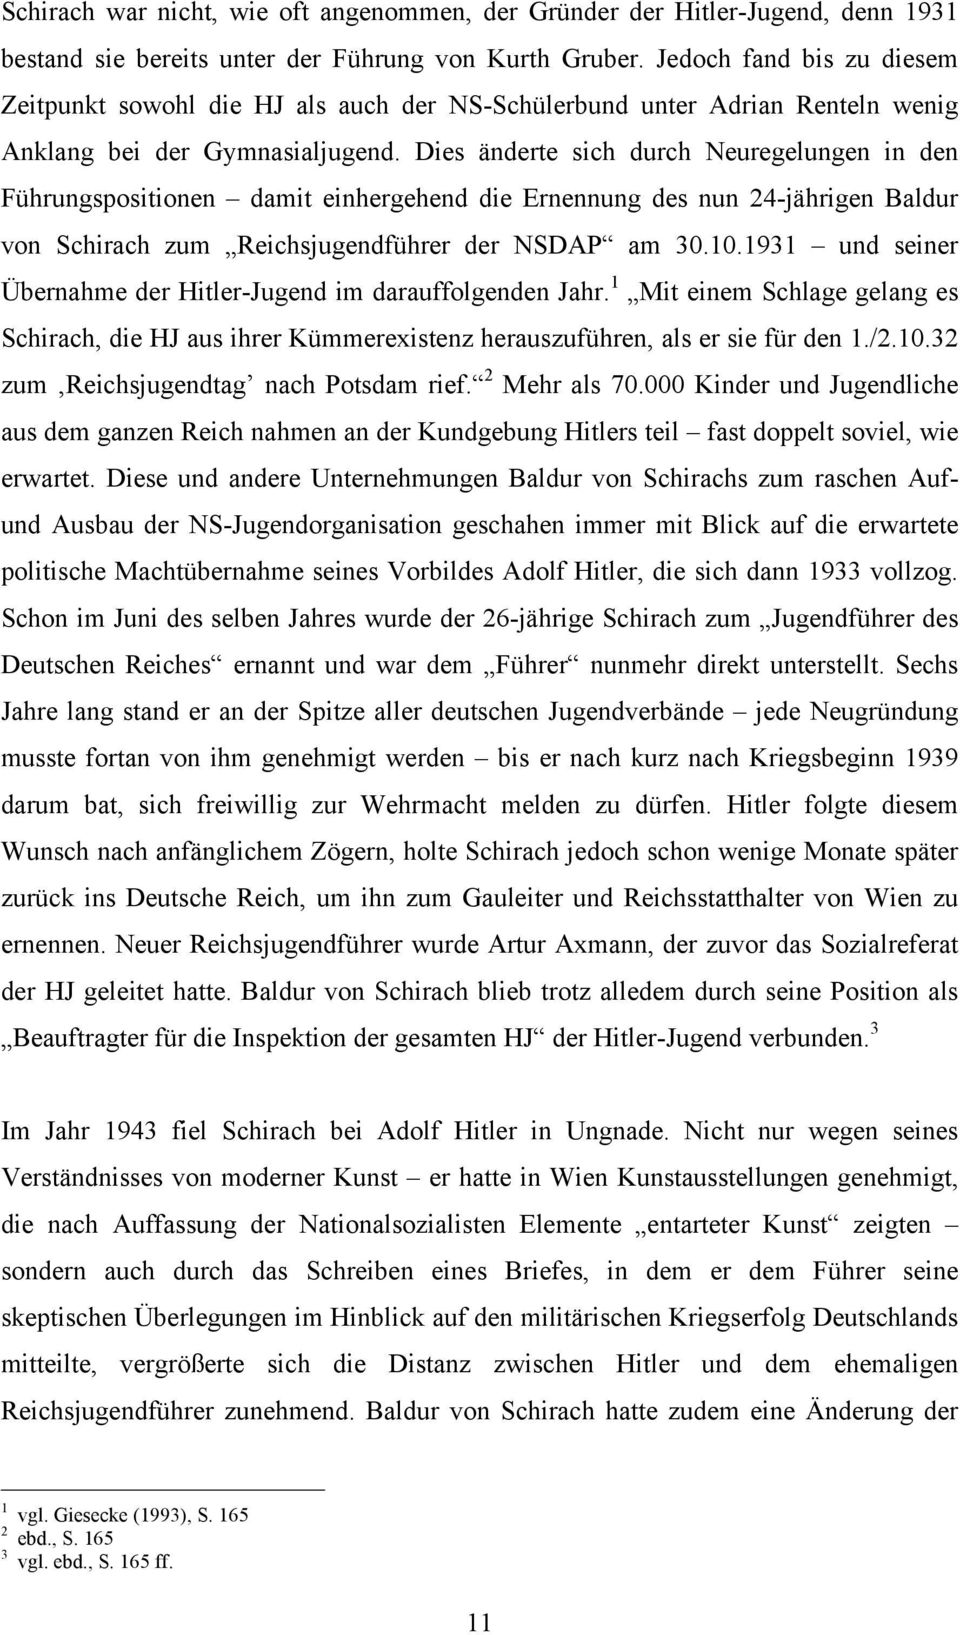 Dies änderte sich durch Neuregelungen in den Führungspositionen damit einhergehend die Ernennung des nun 24-jährigen Baldur von Schirach zum Reichsjugendführer der NSDAP am 30.10.